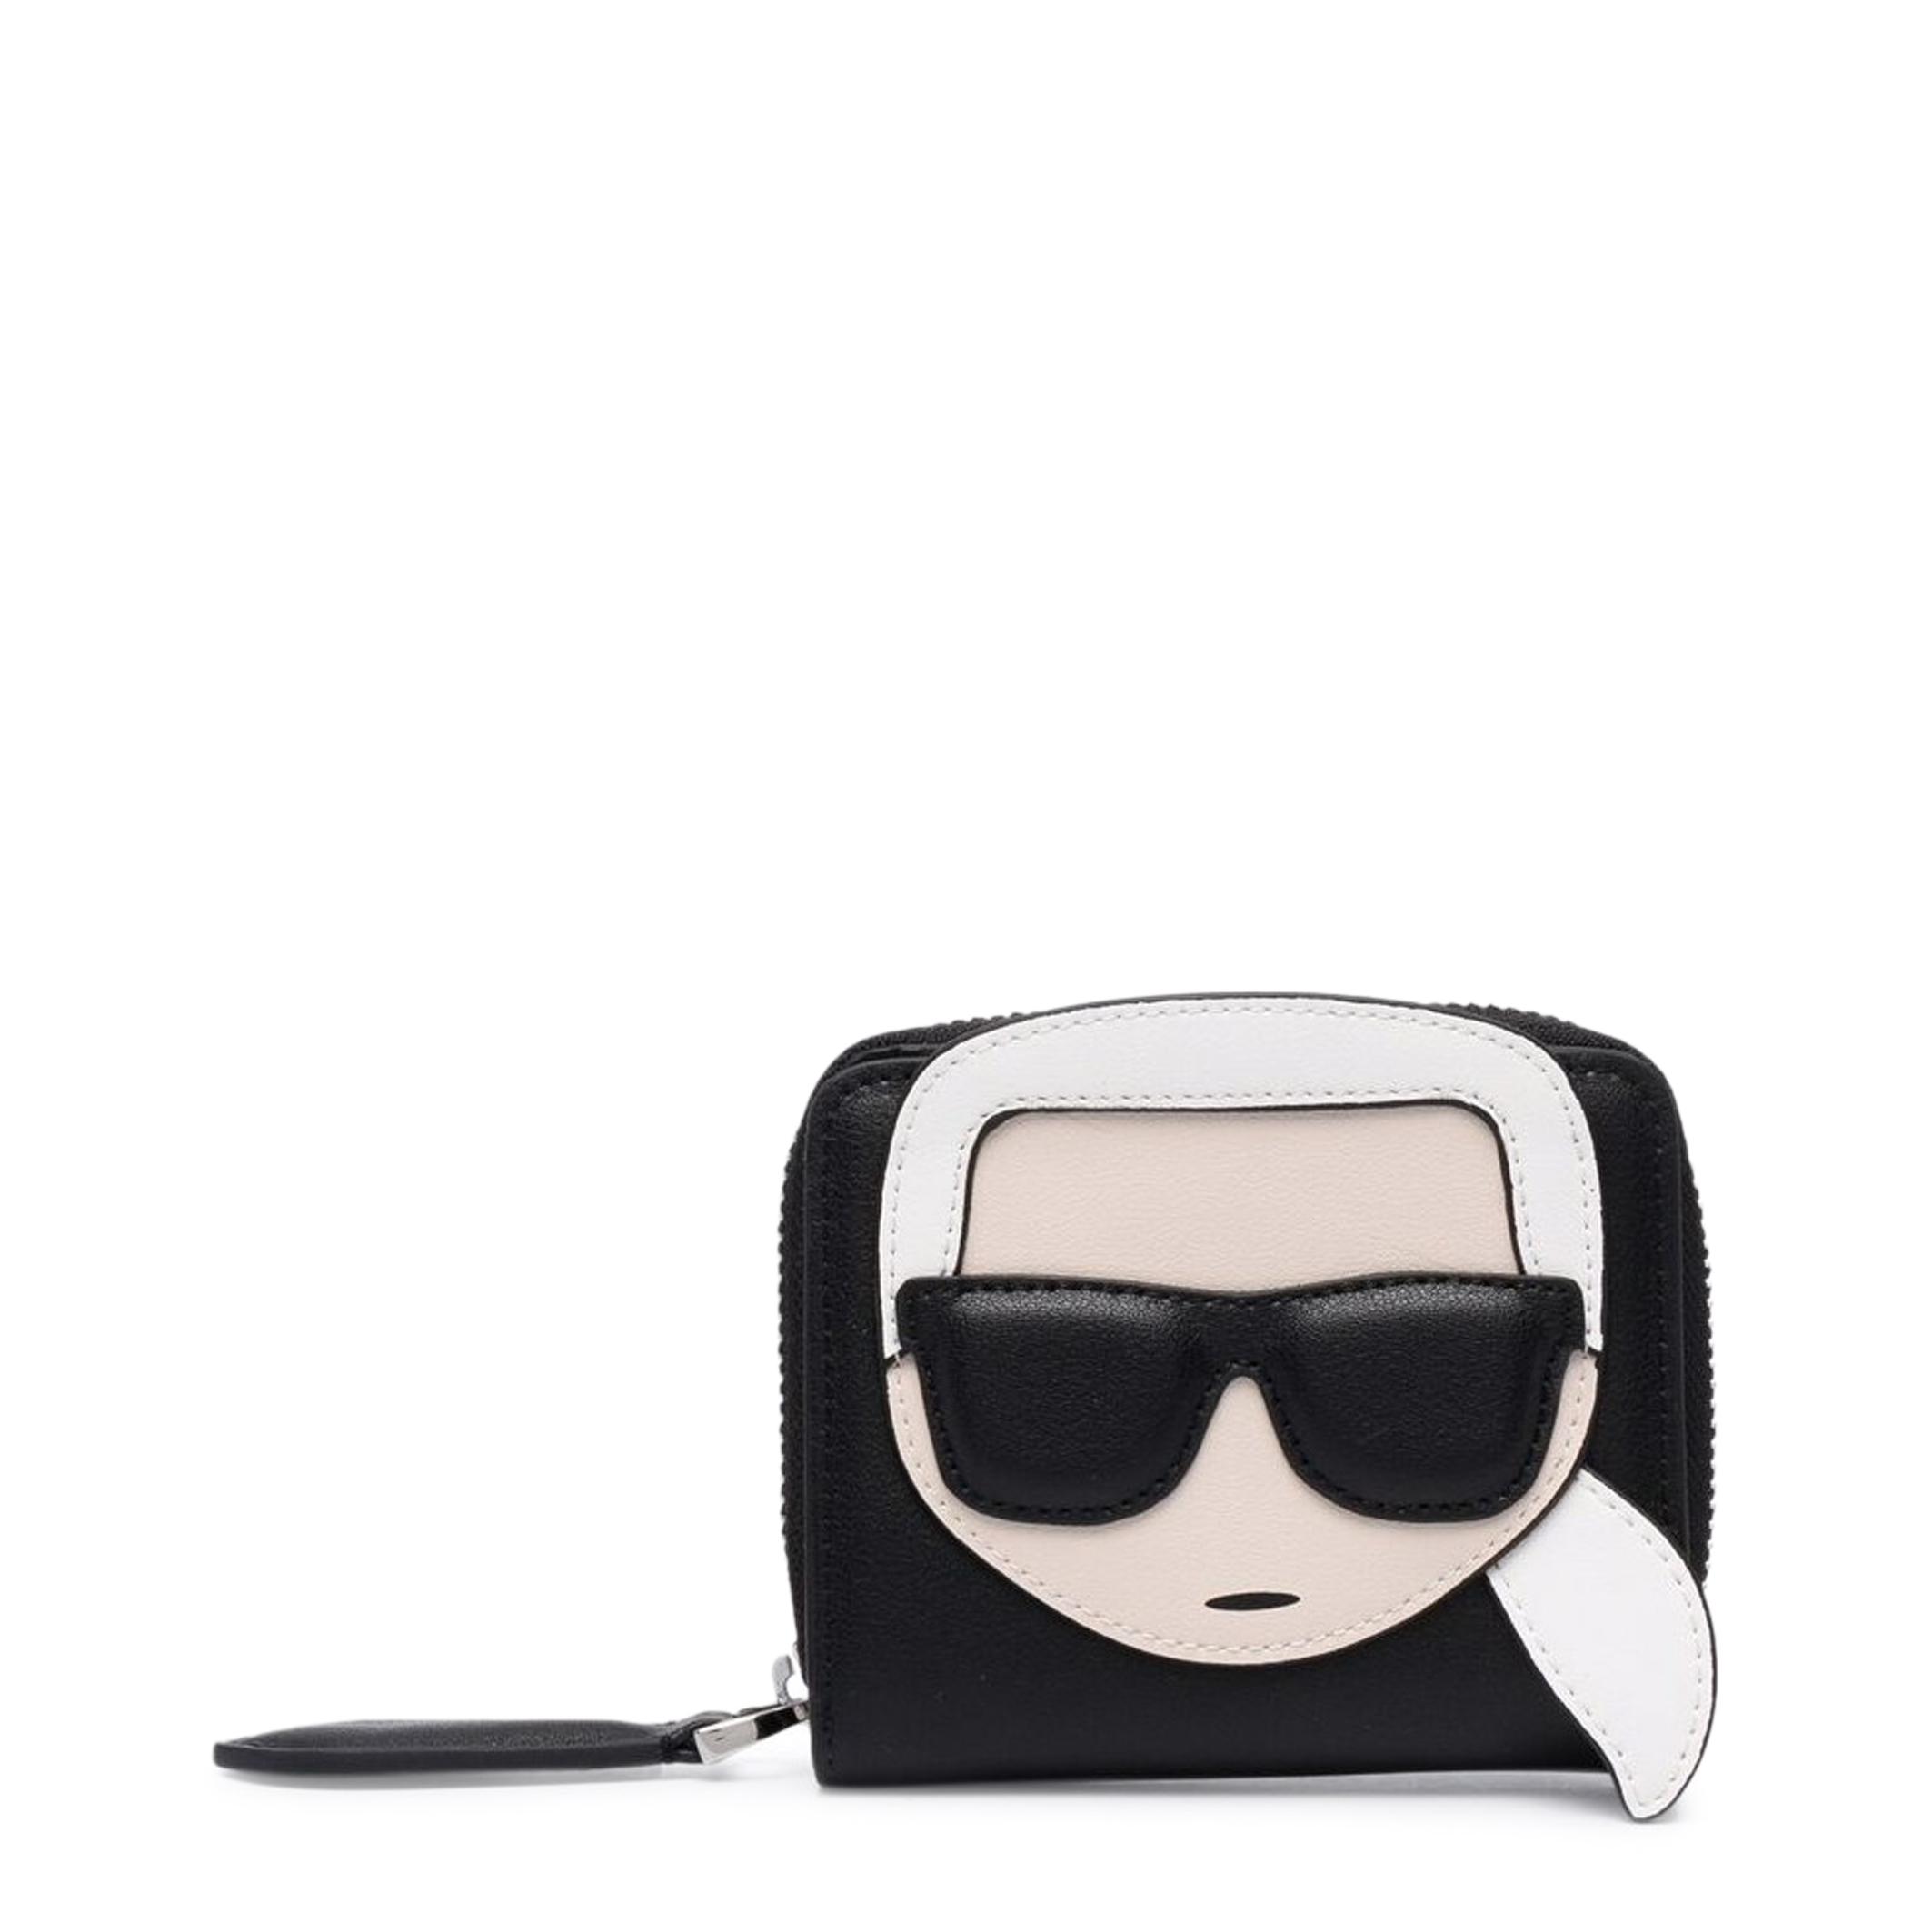 Karl Lagerfeld Black Wallets for Women - 220W3218